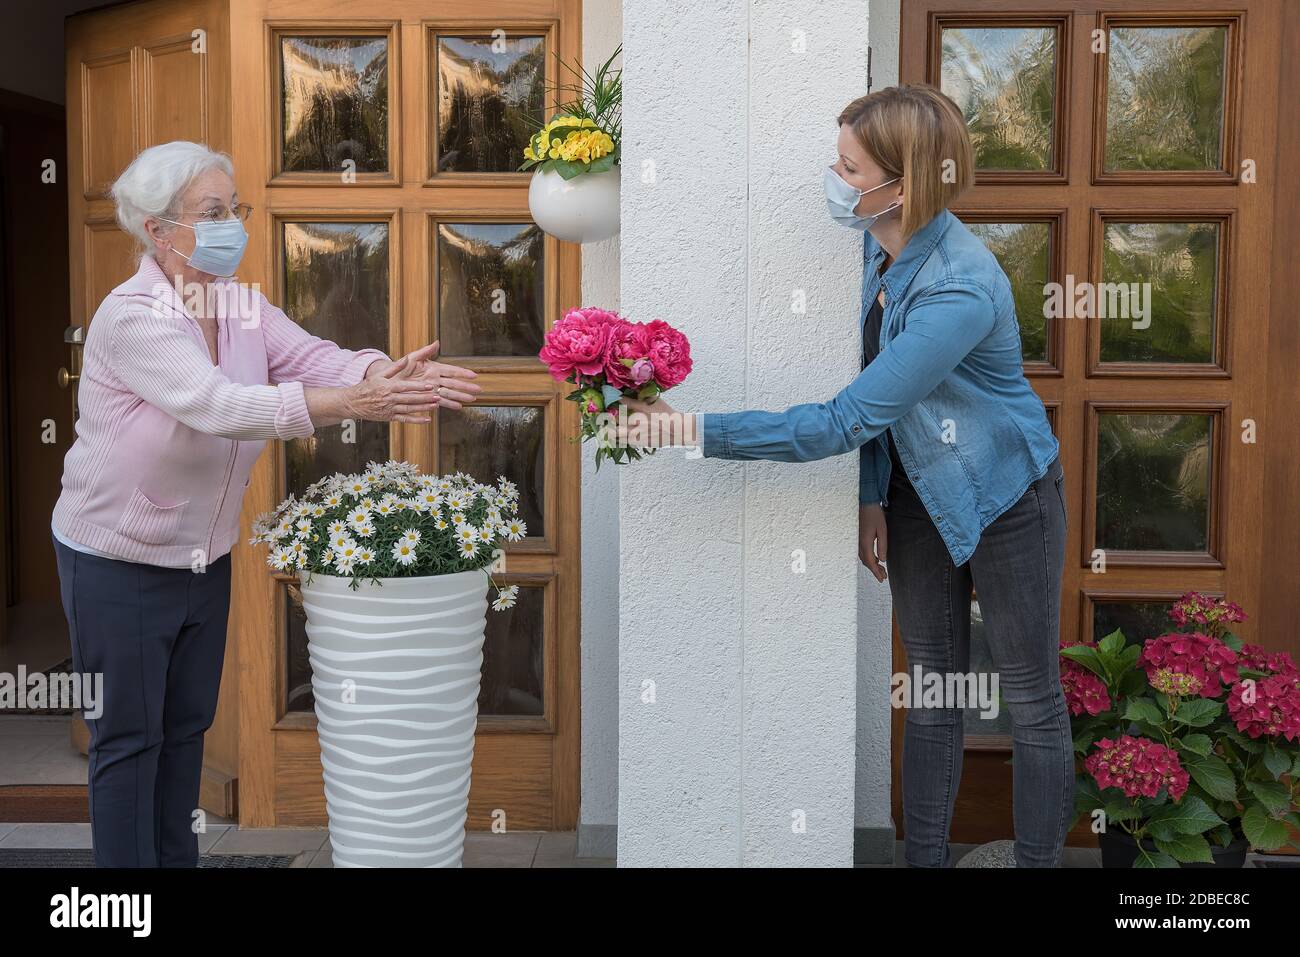 Donna anziana con maschera facciale ottiene fiori da giovane donna vicina Foto Stock